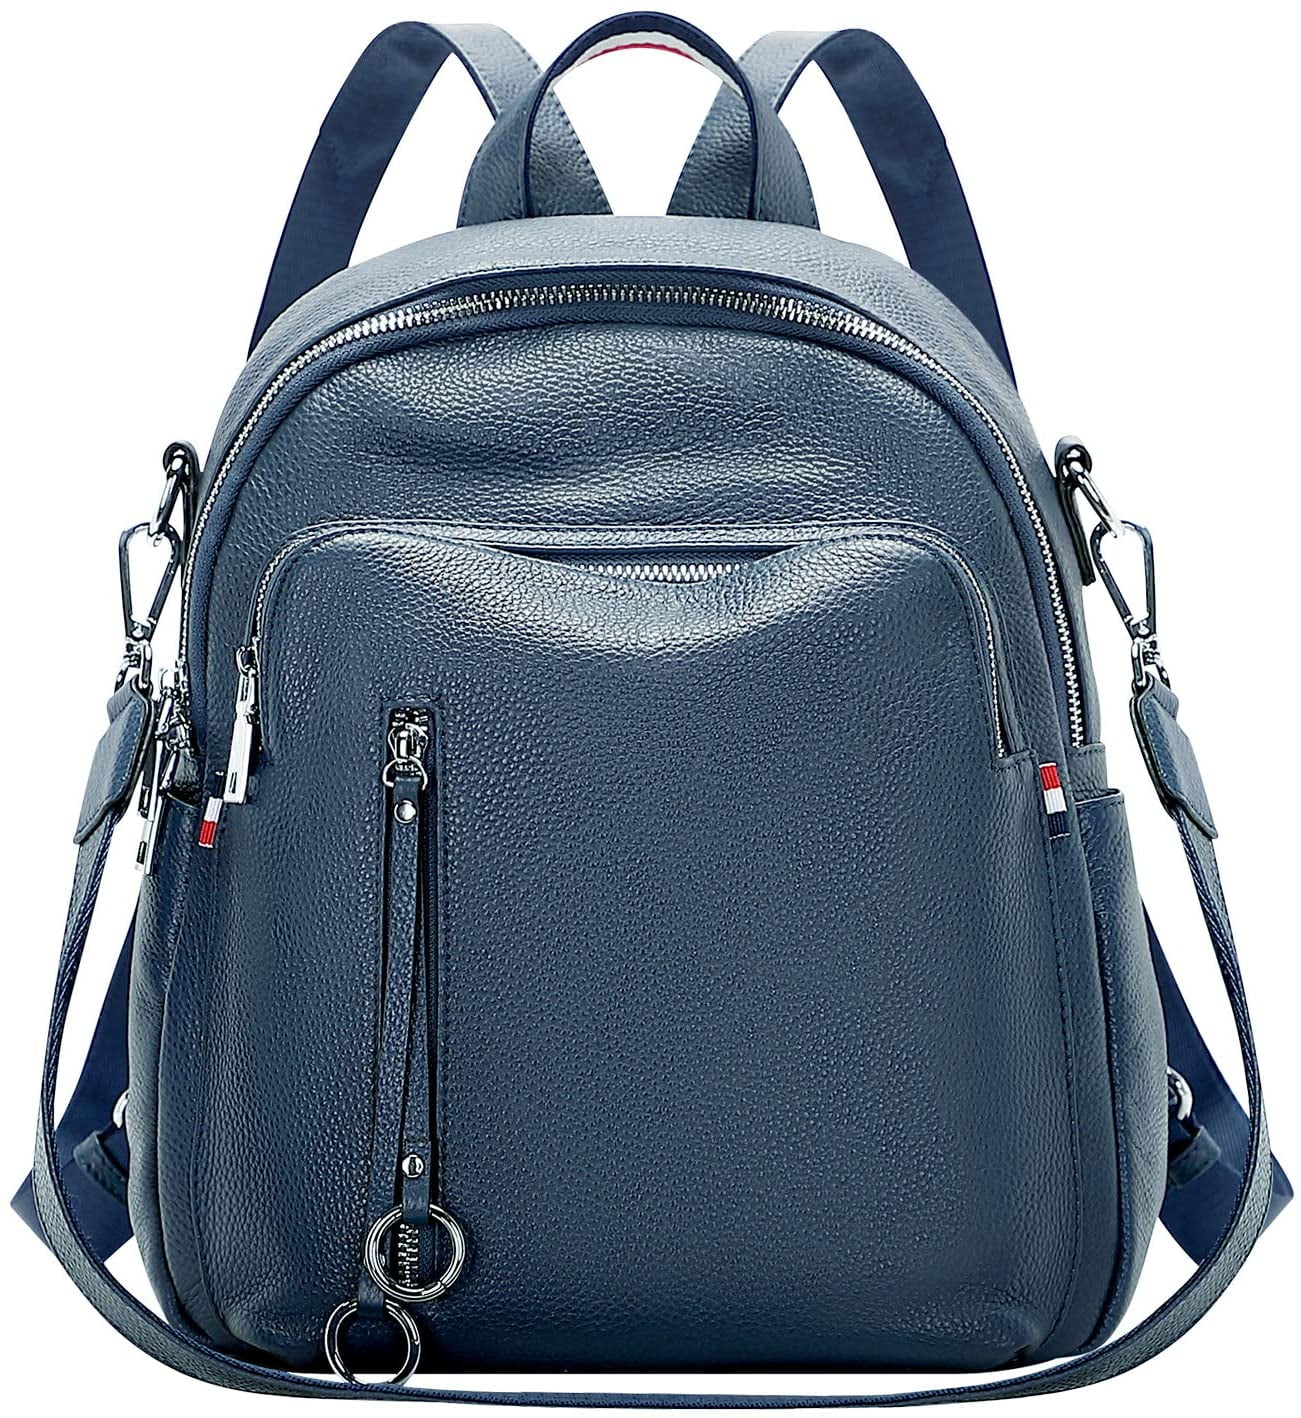 ALTOSY Genuine Leather Backpack for Women Fashion Shoulder Bag Satchel ...